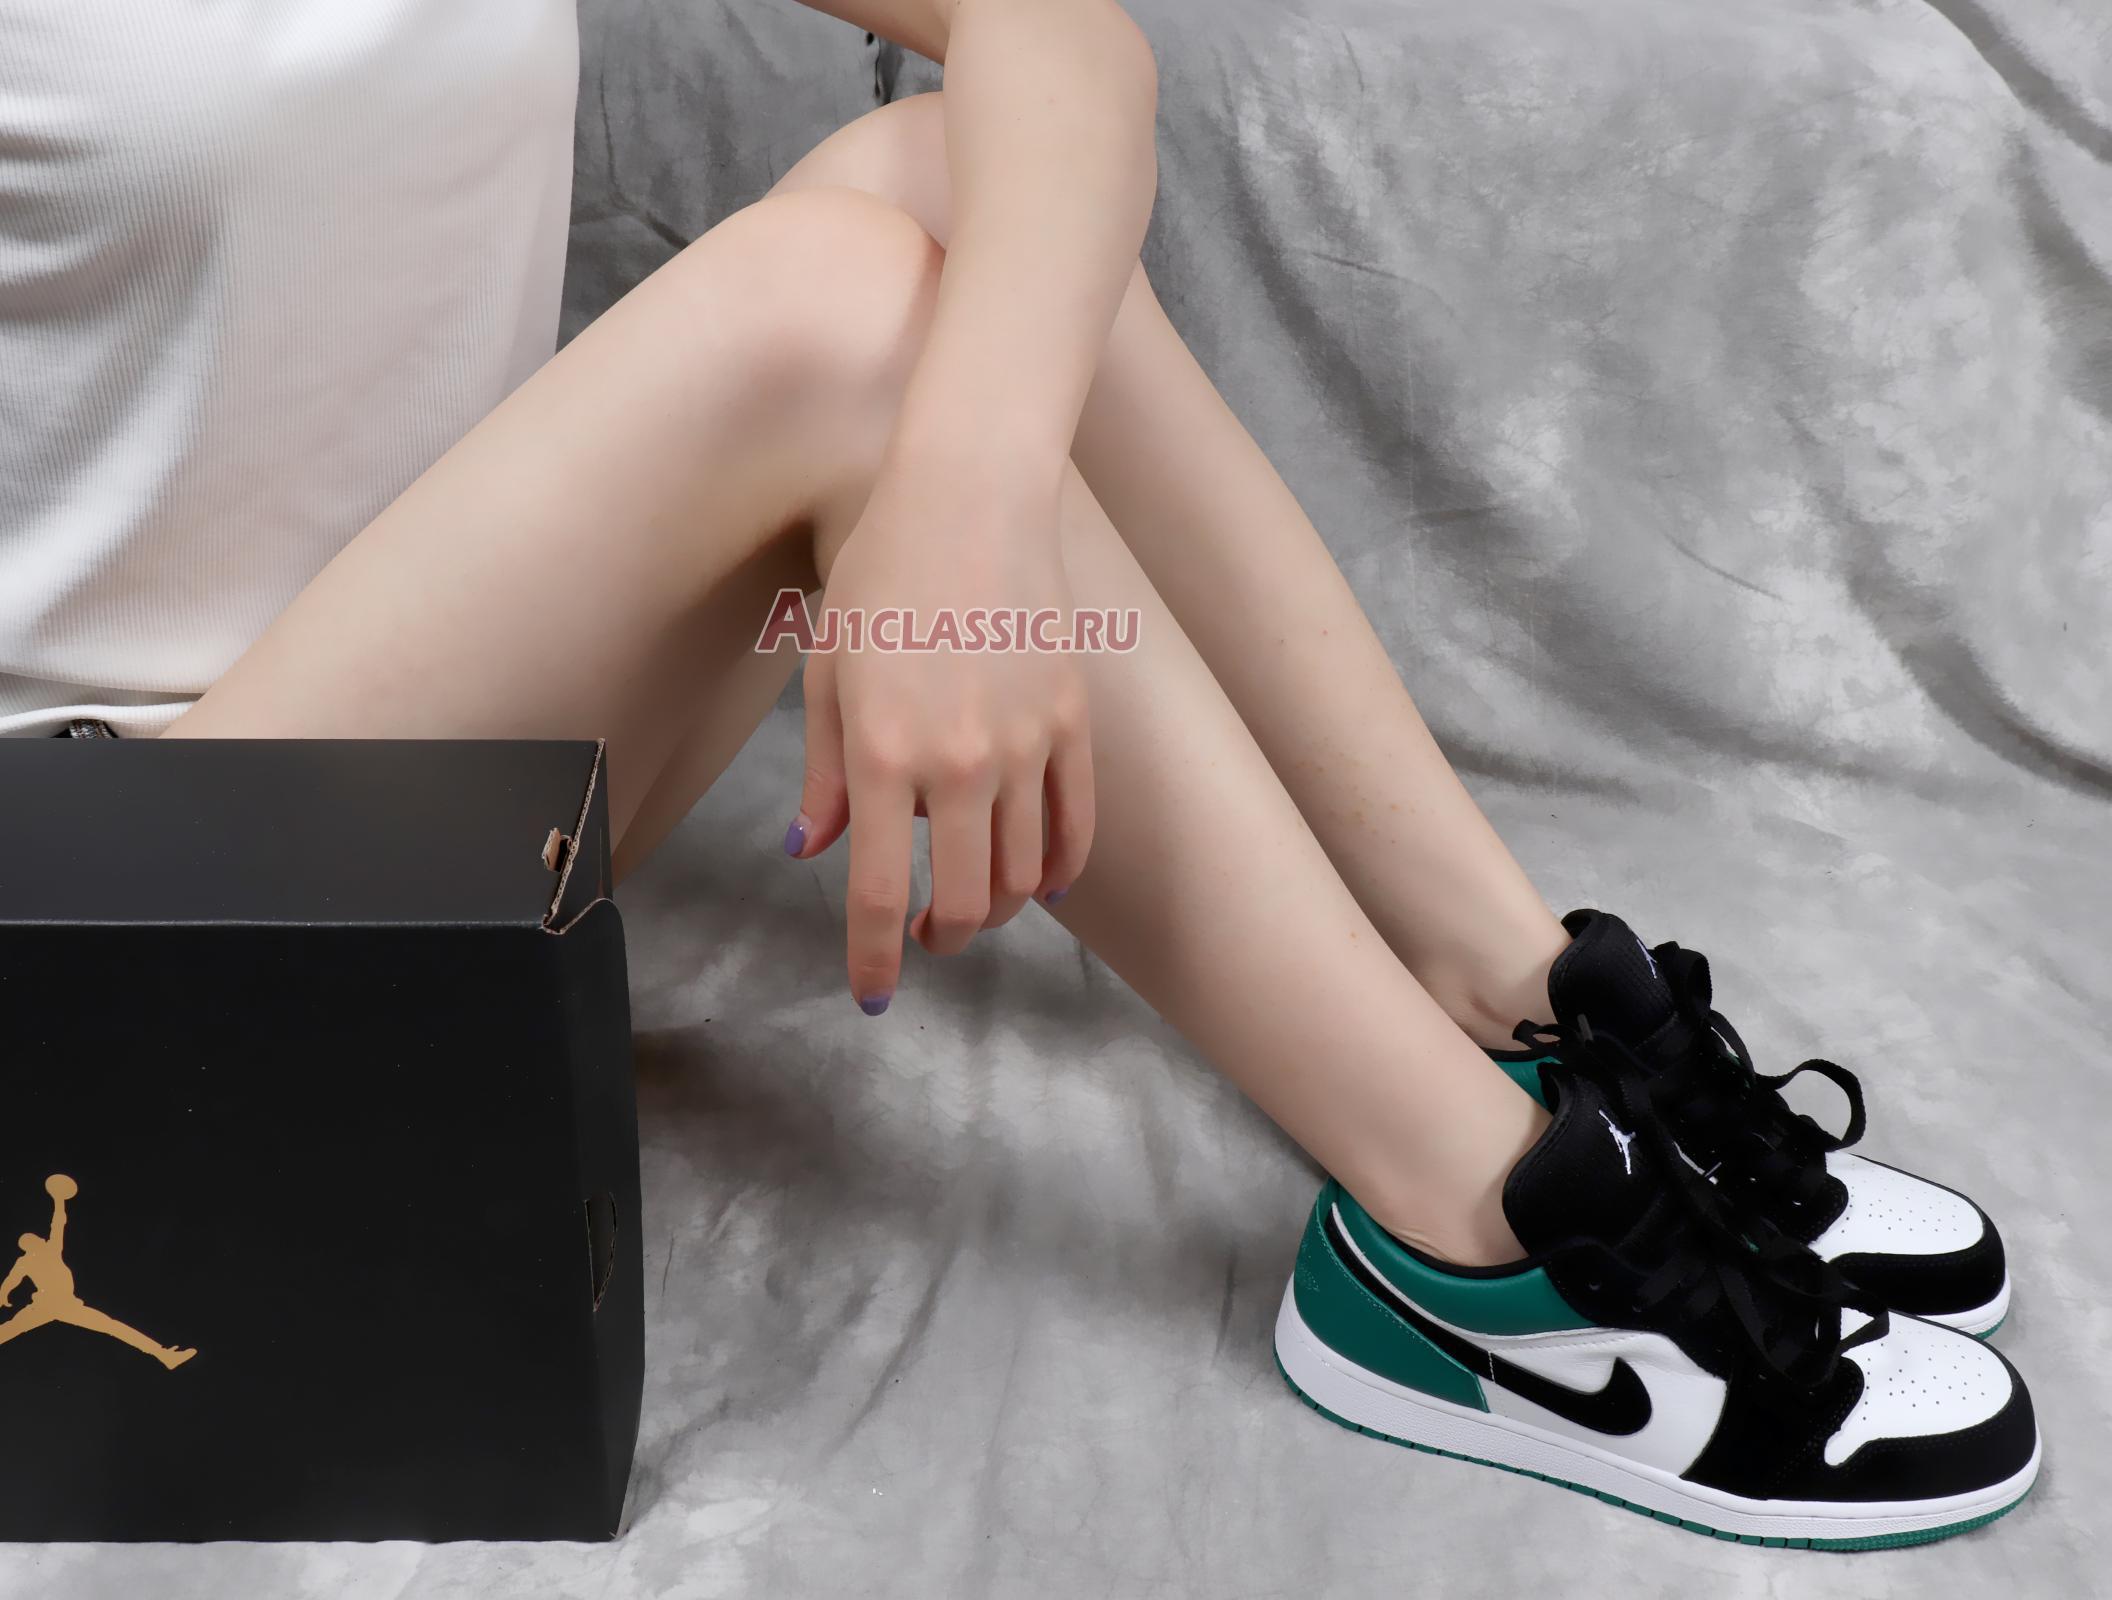 Air Jordan 1 Retro Low Emerald Rise 553560-113 White/Emerald Rise-Black Sneakers